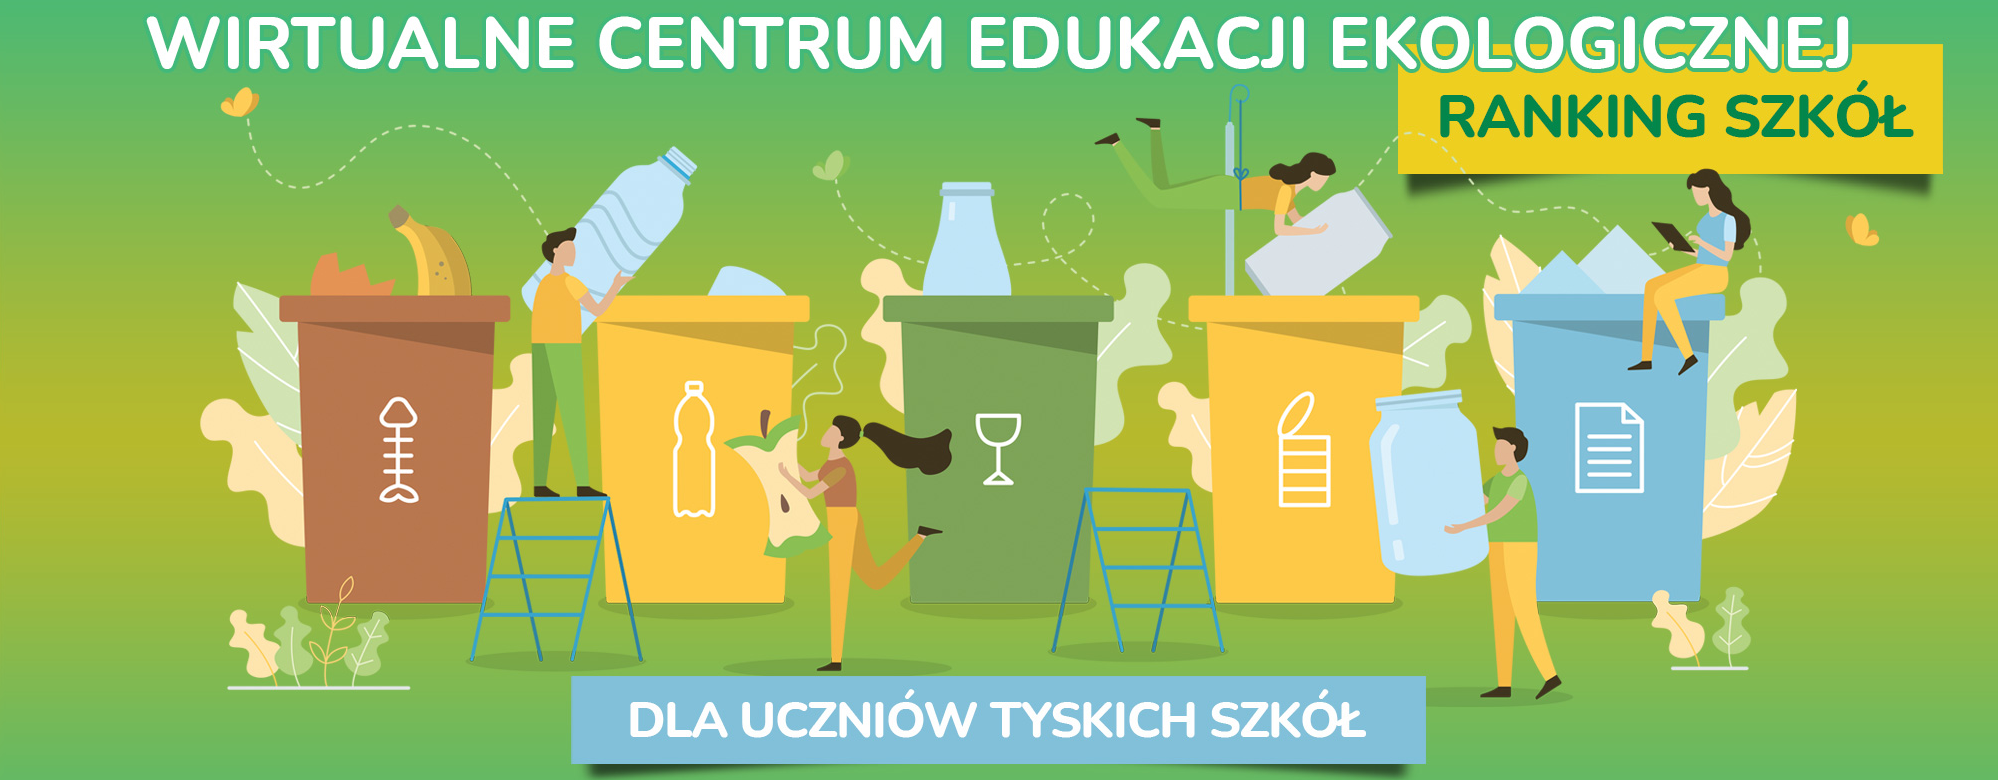 centrum_edukacyjne_www